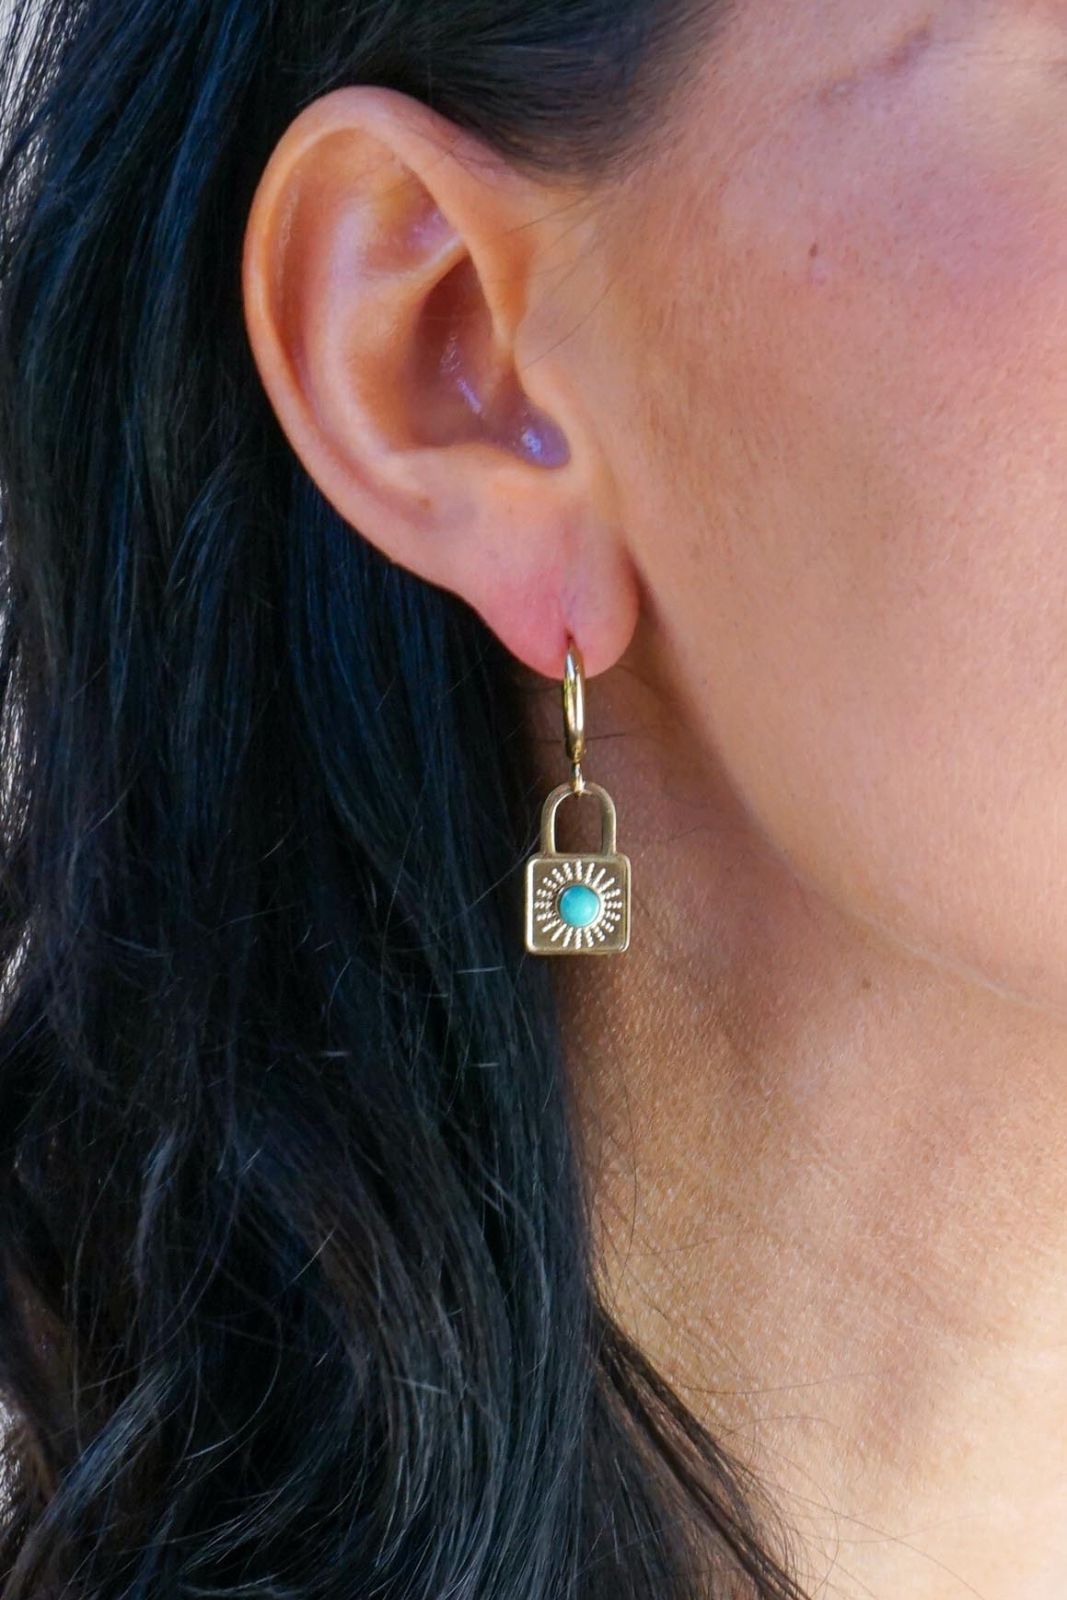 Golden earrings turquoise stone